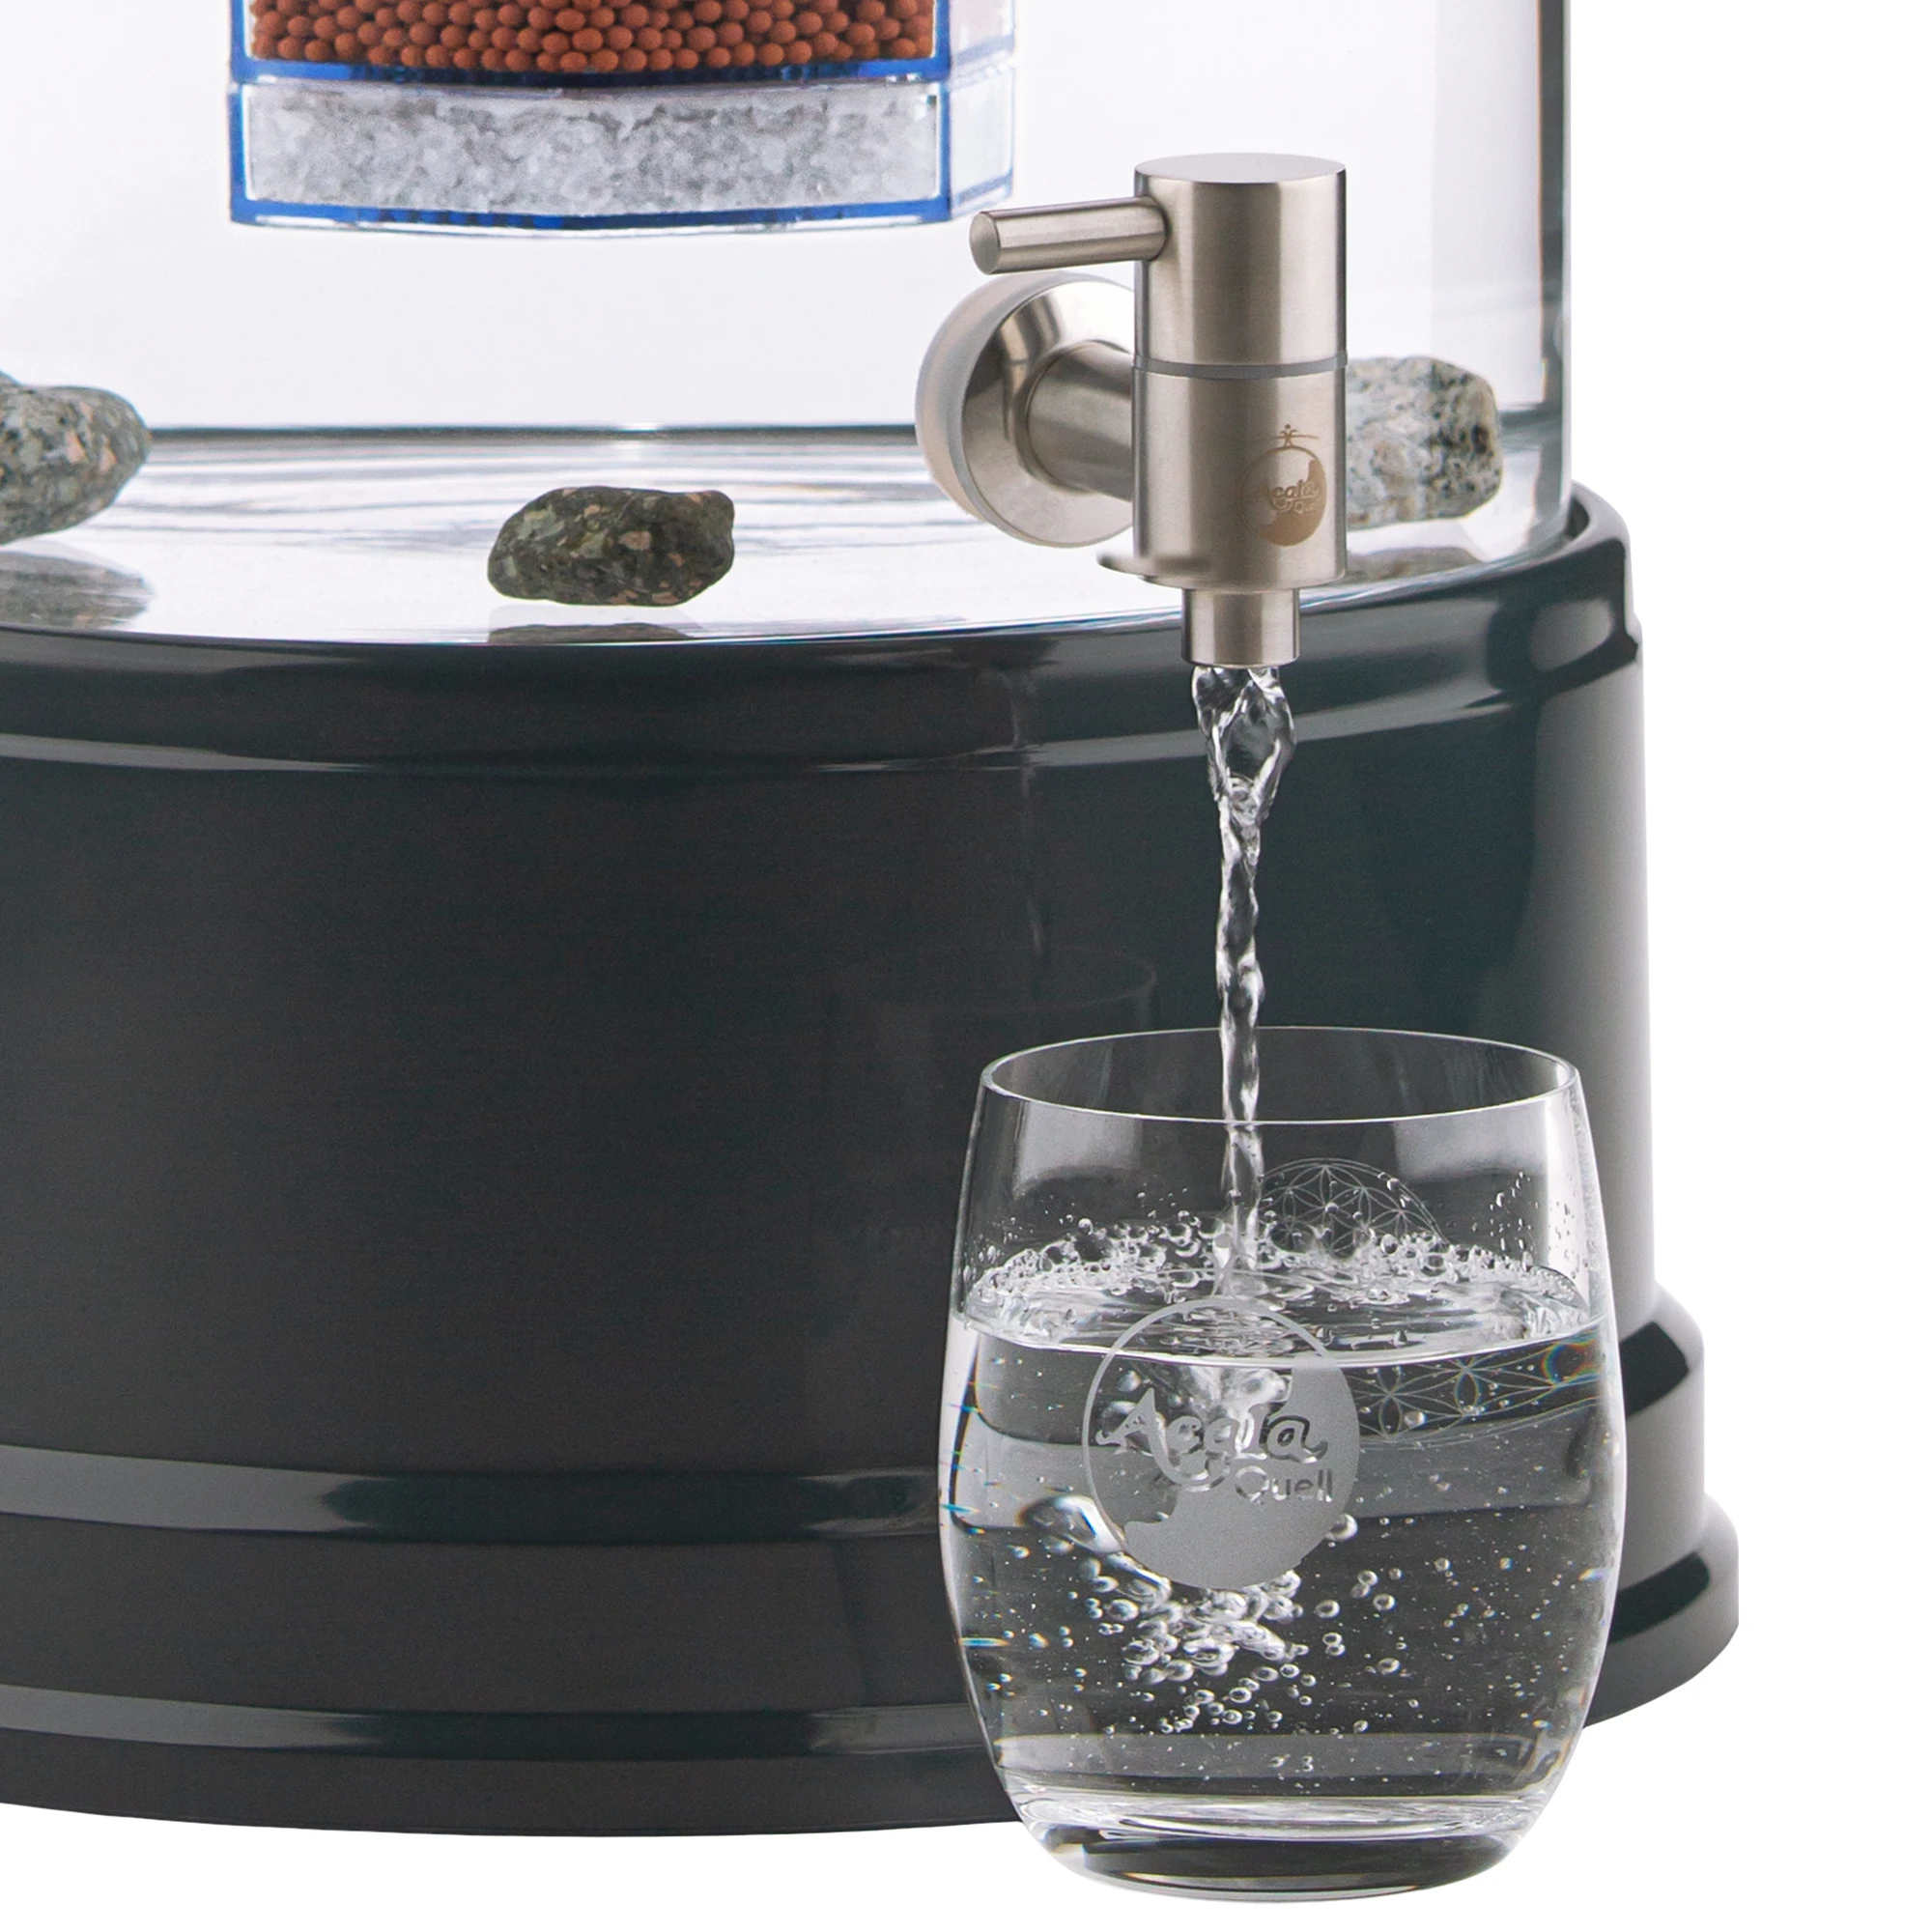 Zu sehen ist der Edelstahl Wasserhahn Makino für Standfilter an einem Glastank in kristallklar montiert. Der Hahn ist silber, man sieht das AcalaQuell Logo darauf. Der Hebel zum öffnen ist nach links gedreht, Wasser läuft in ein darunter stehendes Glas.